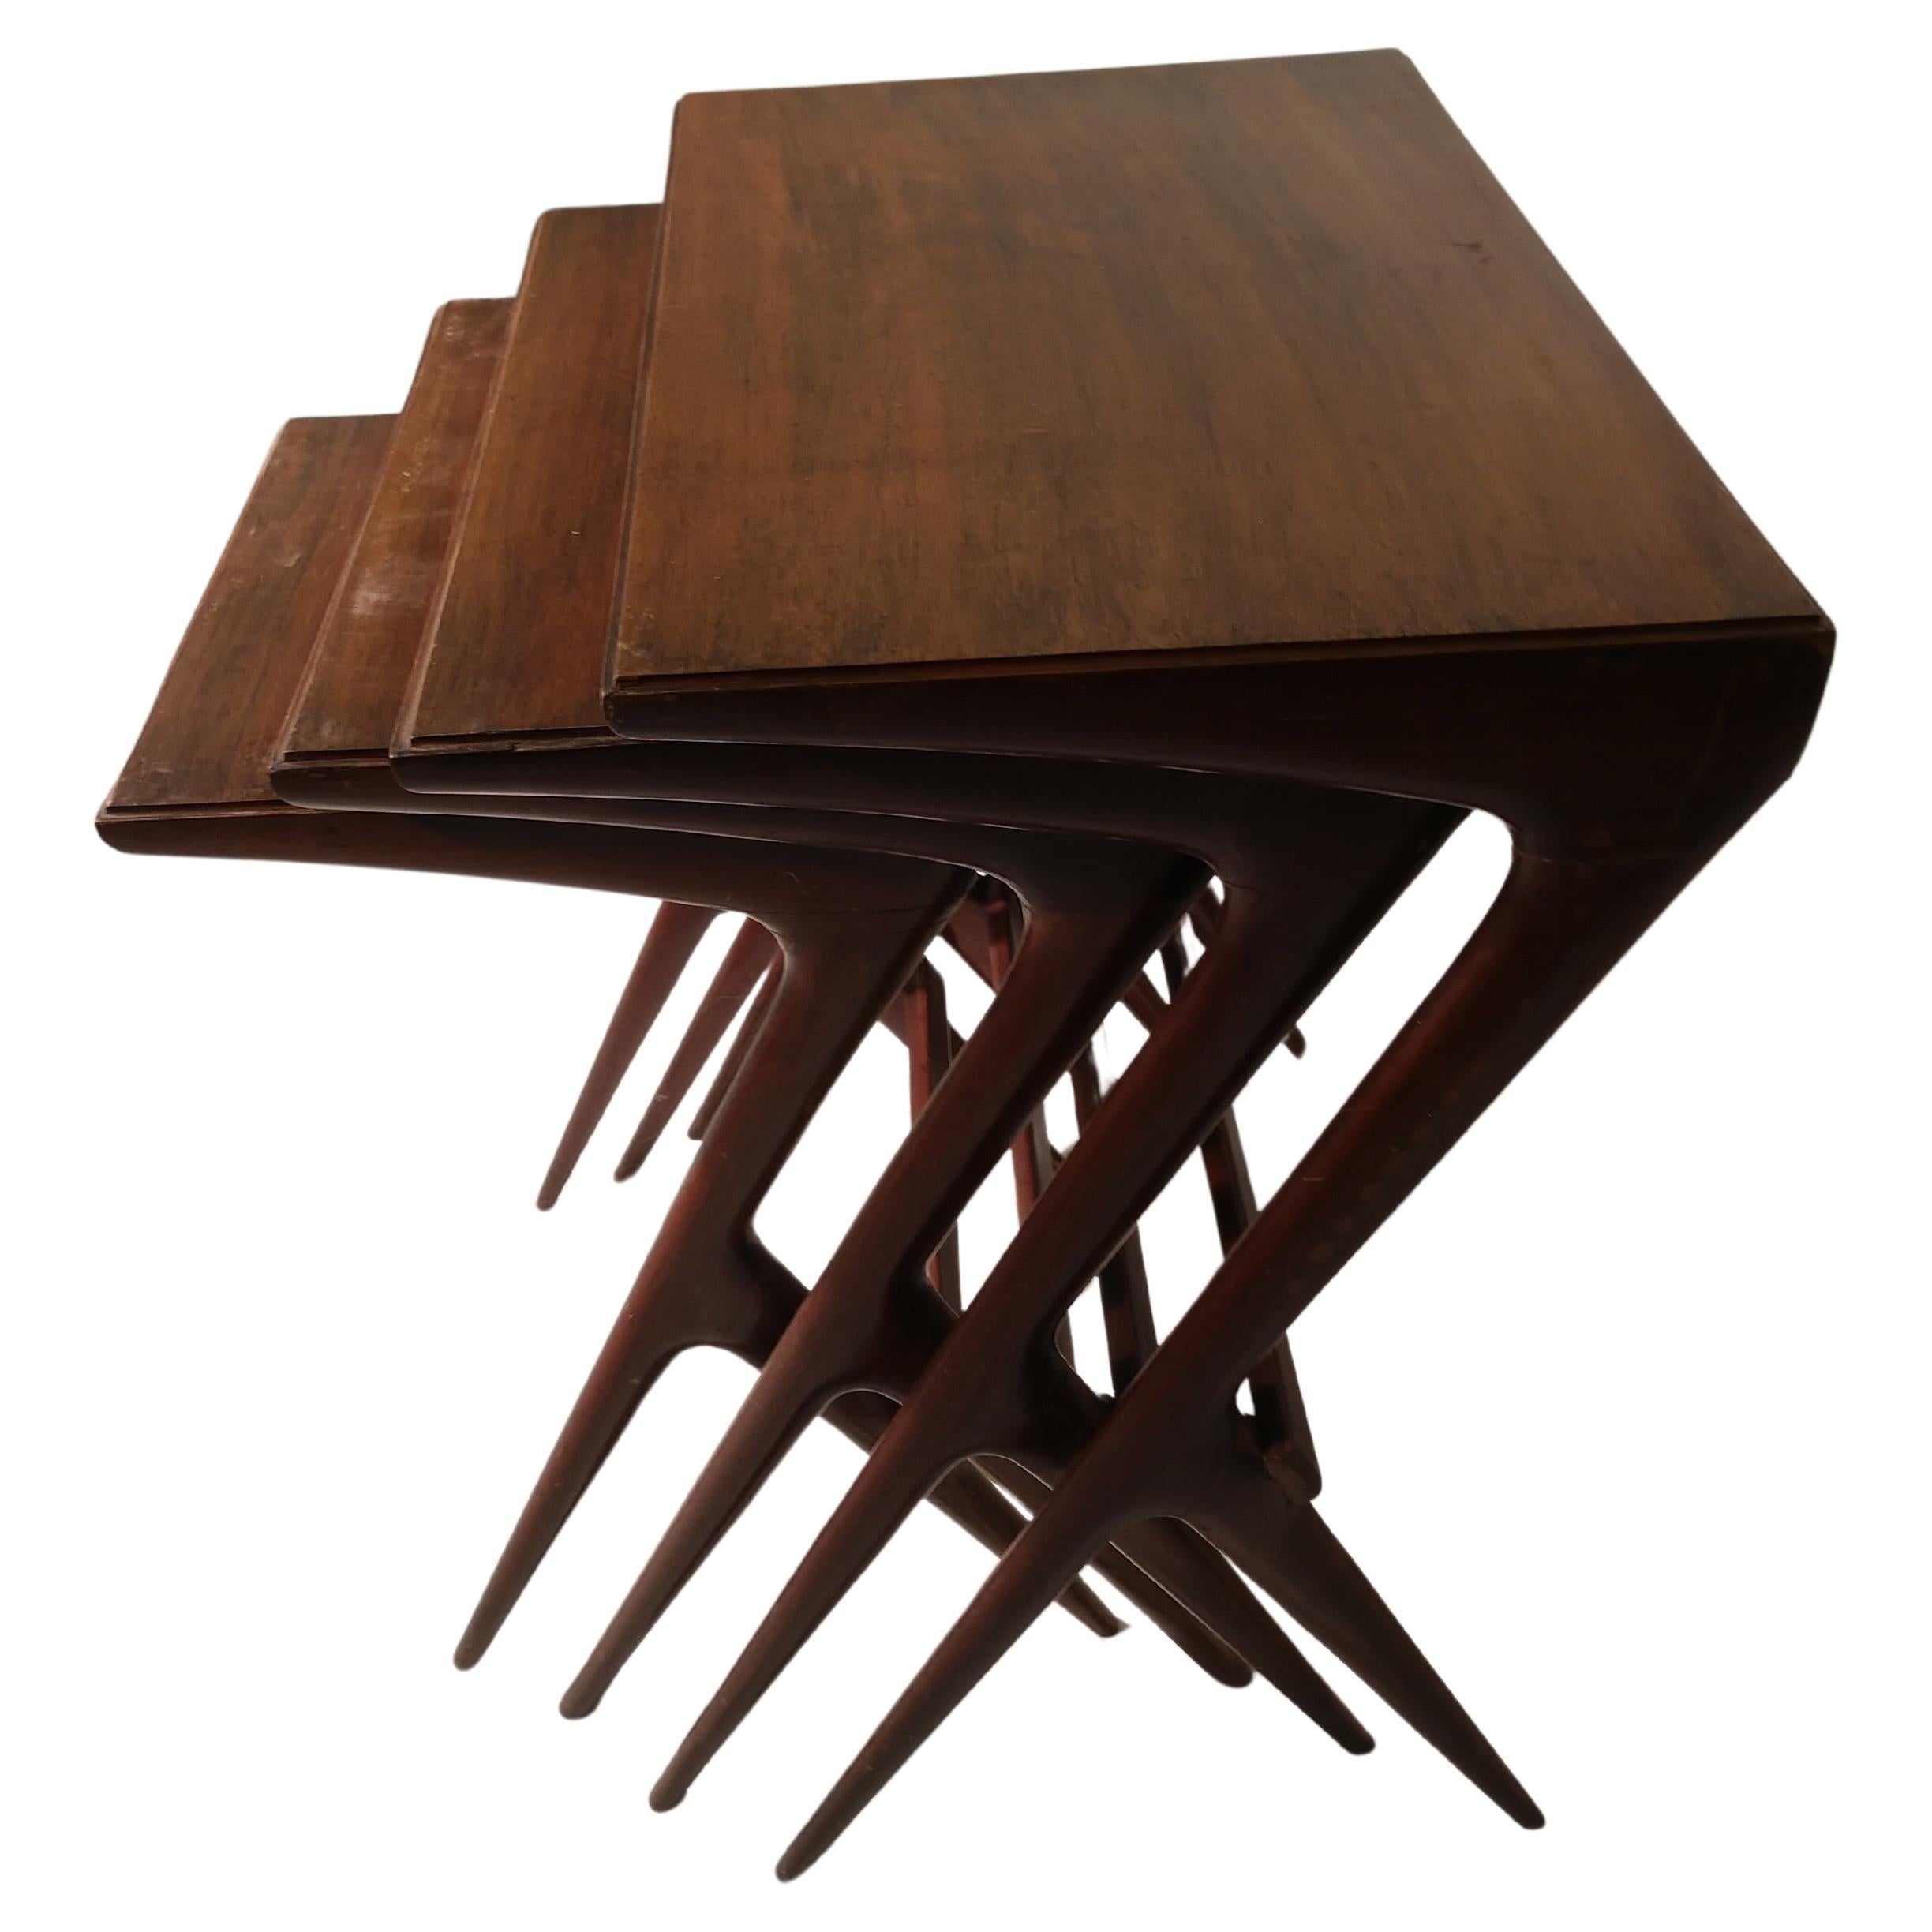 Elegant et sculptural ensemble de 4 tables gigognes en noyer des années 1950 par Ico Parisi. Les tables sont très serrées et stables. Finition originale. Le prix est pour l'ensemble qui consiste en :
Mesures : #1. 23,5 x 15,75 x 25,75 H
#2 20,75 x